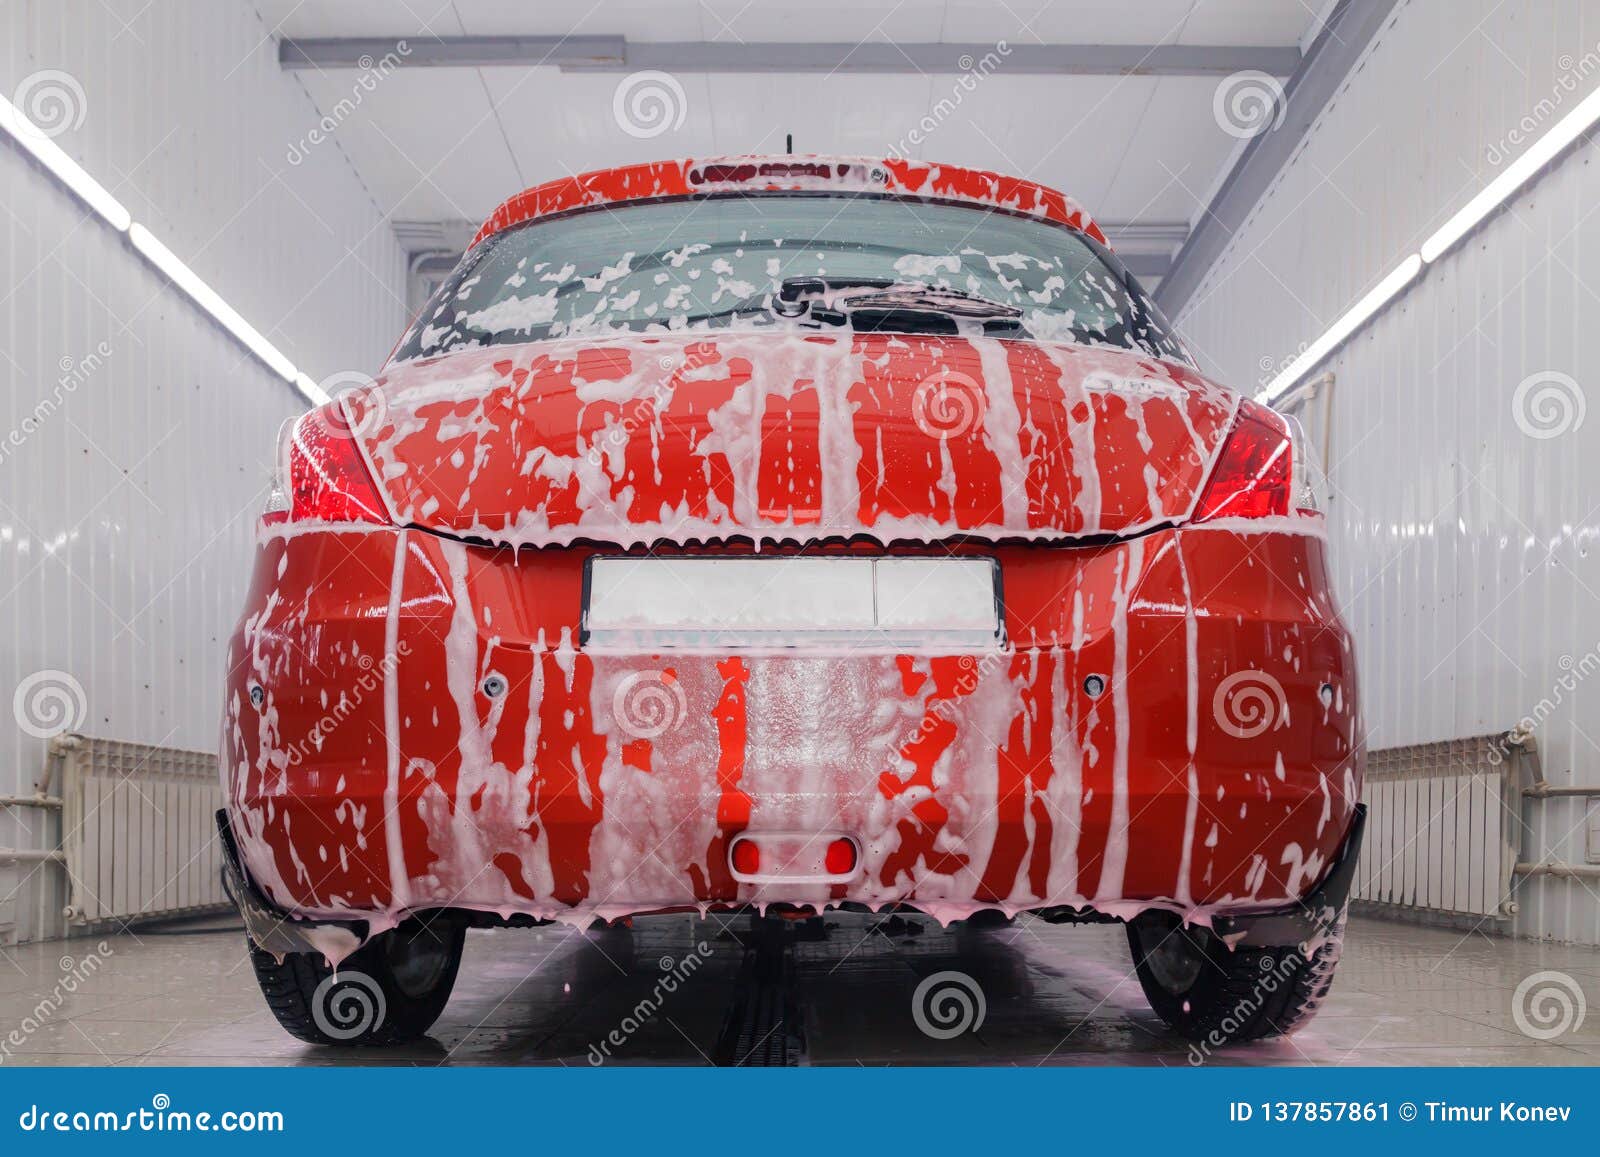 Russia Kemerovo 2019 01 05 Suzuki Swift Bright Red Small Car